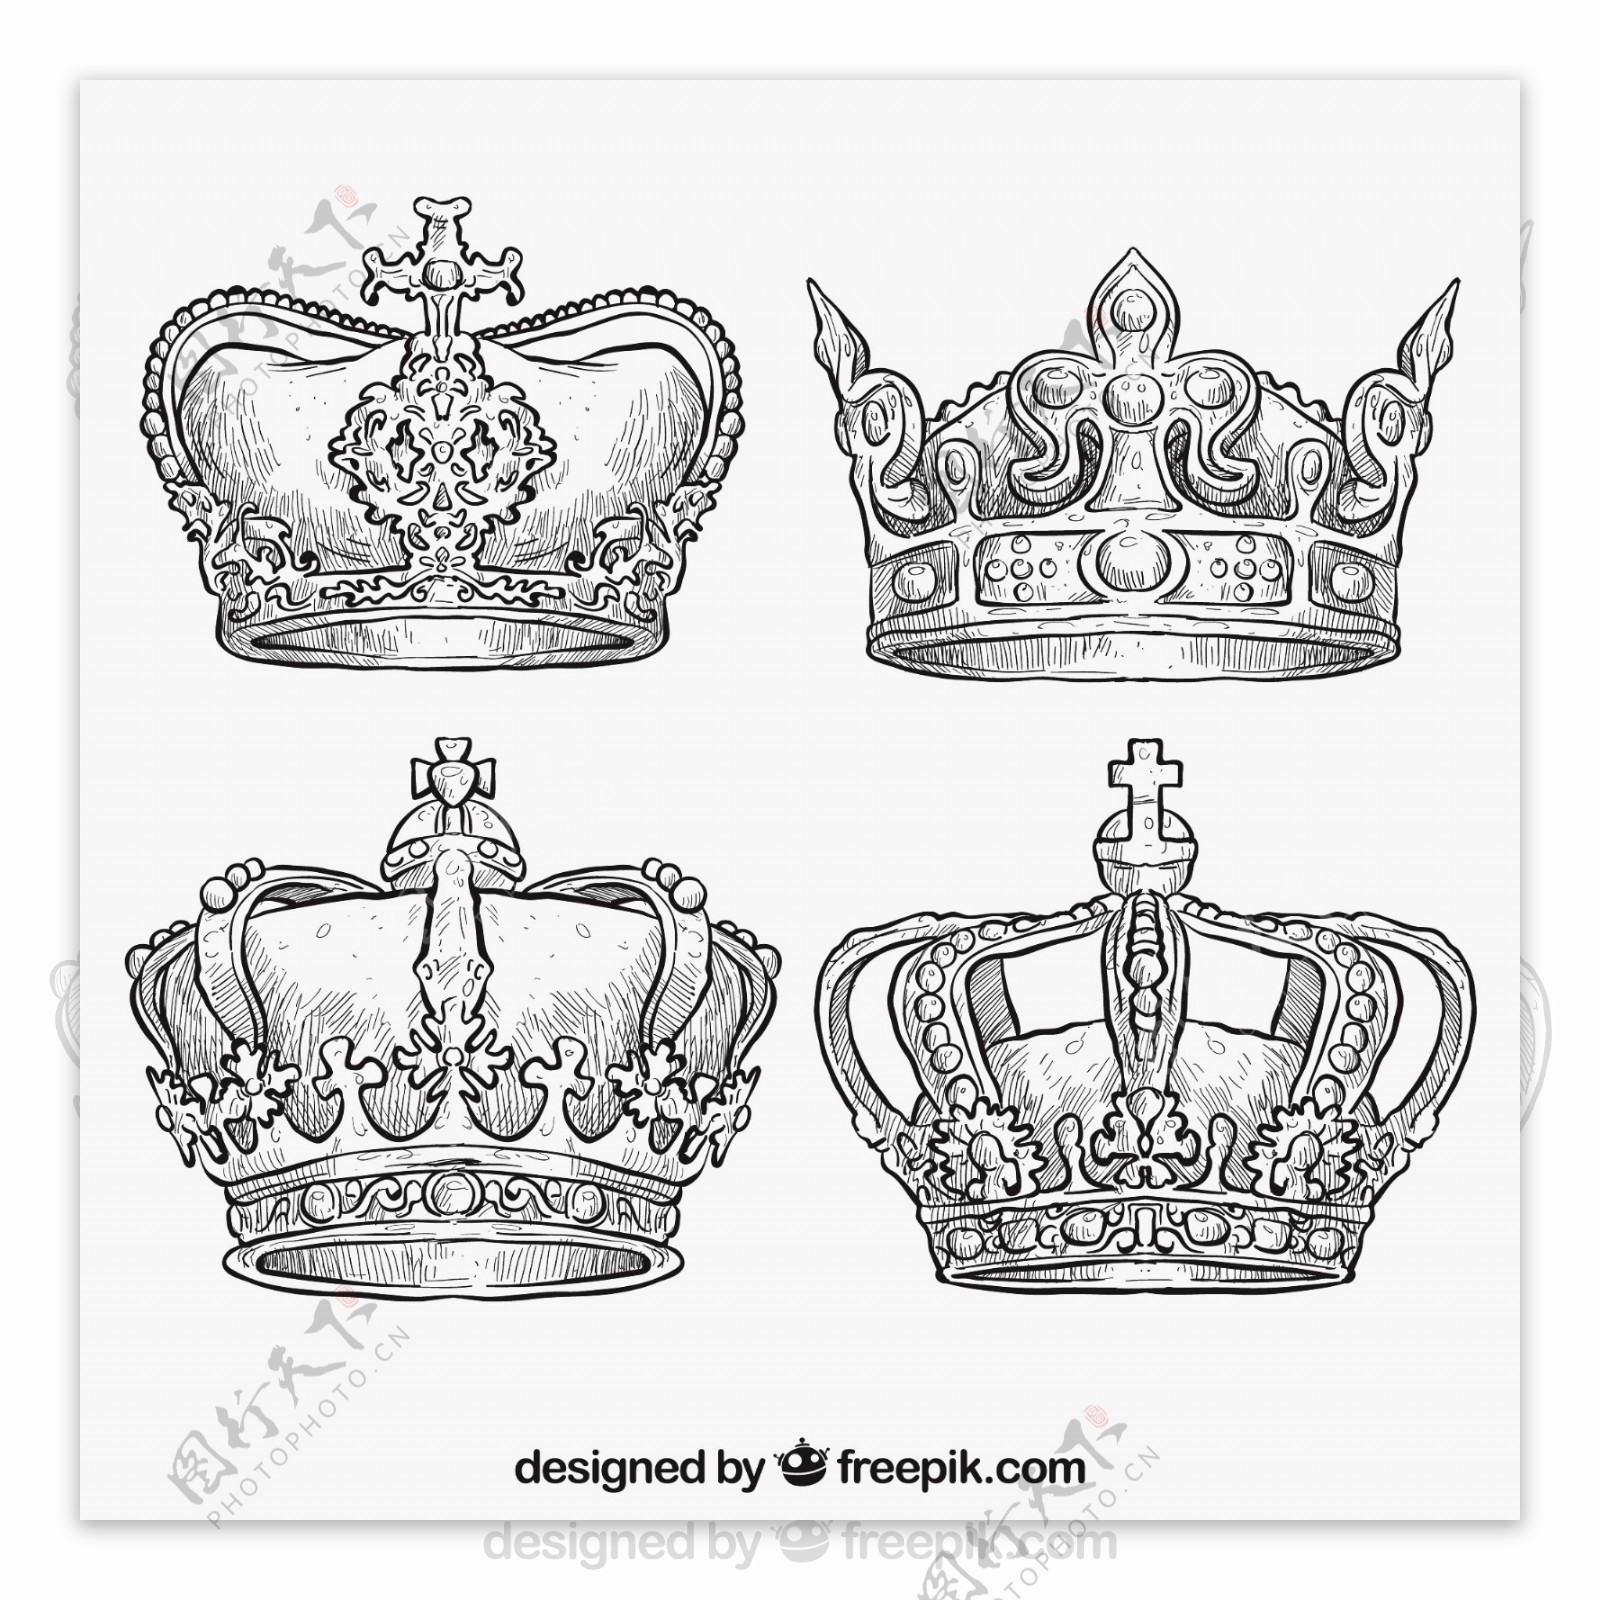 手工绘制的皇家冠